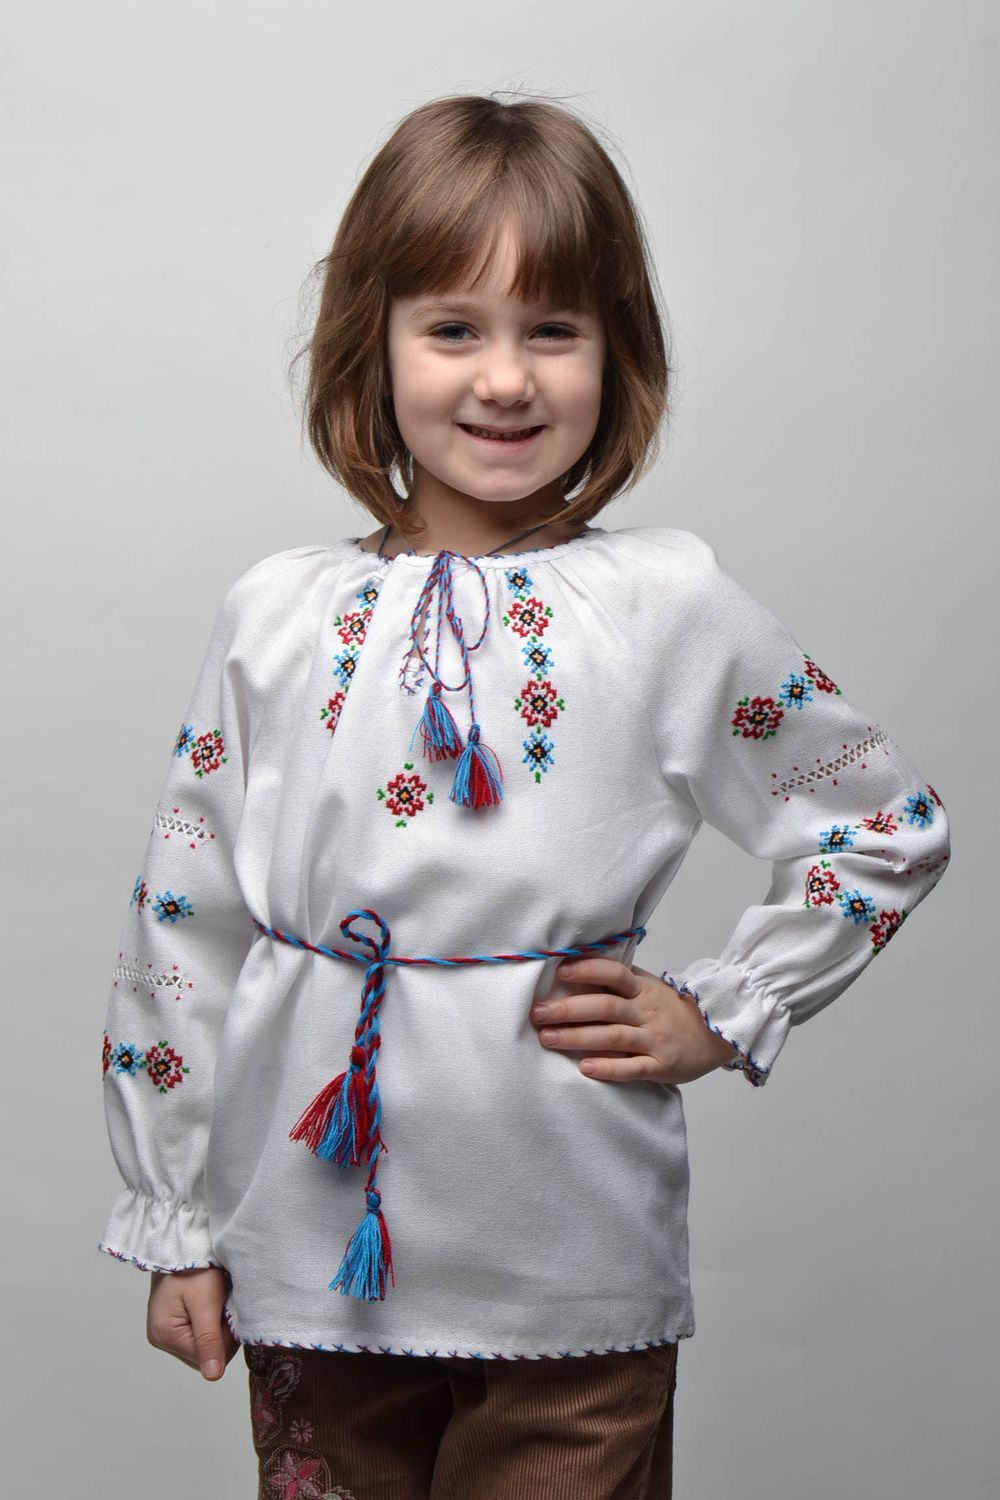 Вышитая рубашка на ребенка 5-7 лет с длинными рукавами и пояском фото 1